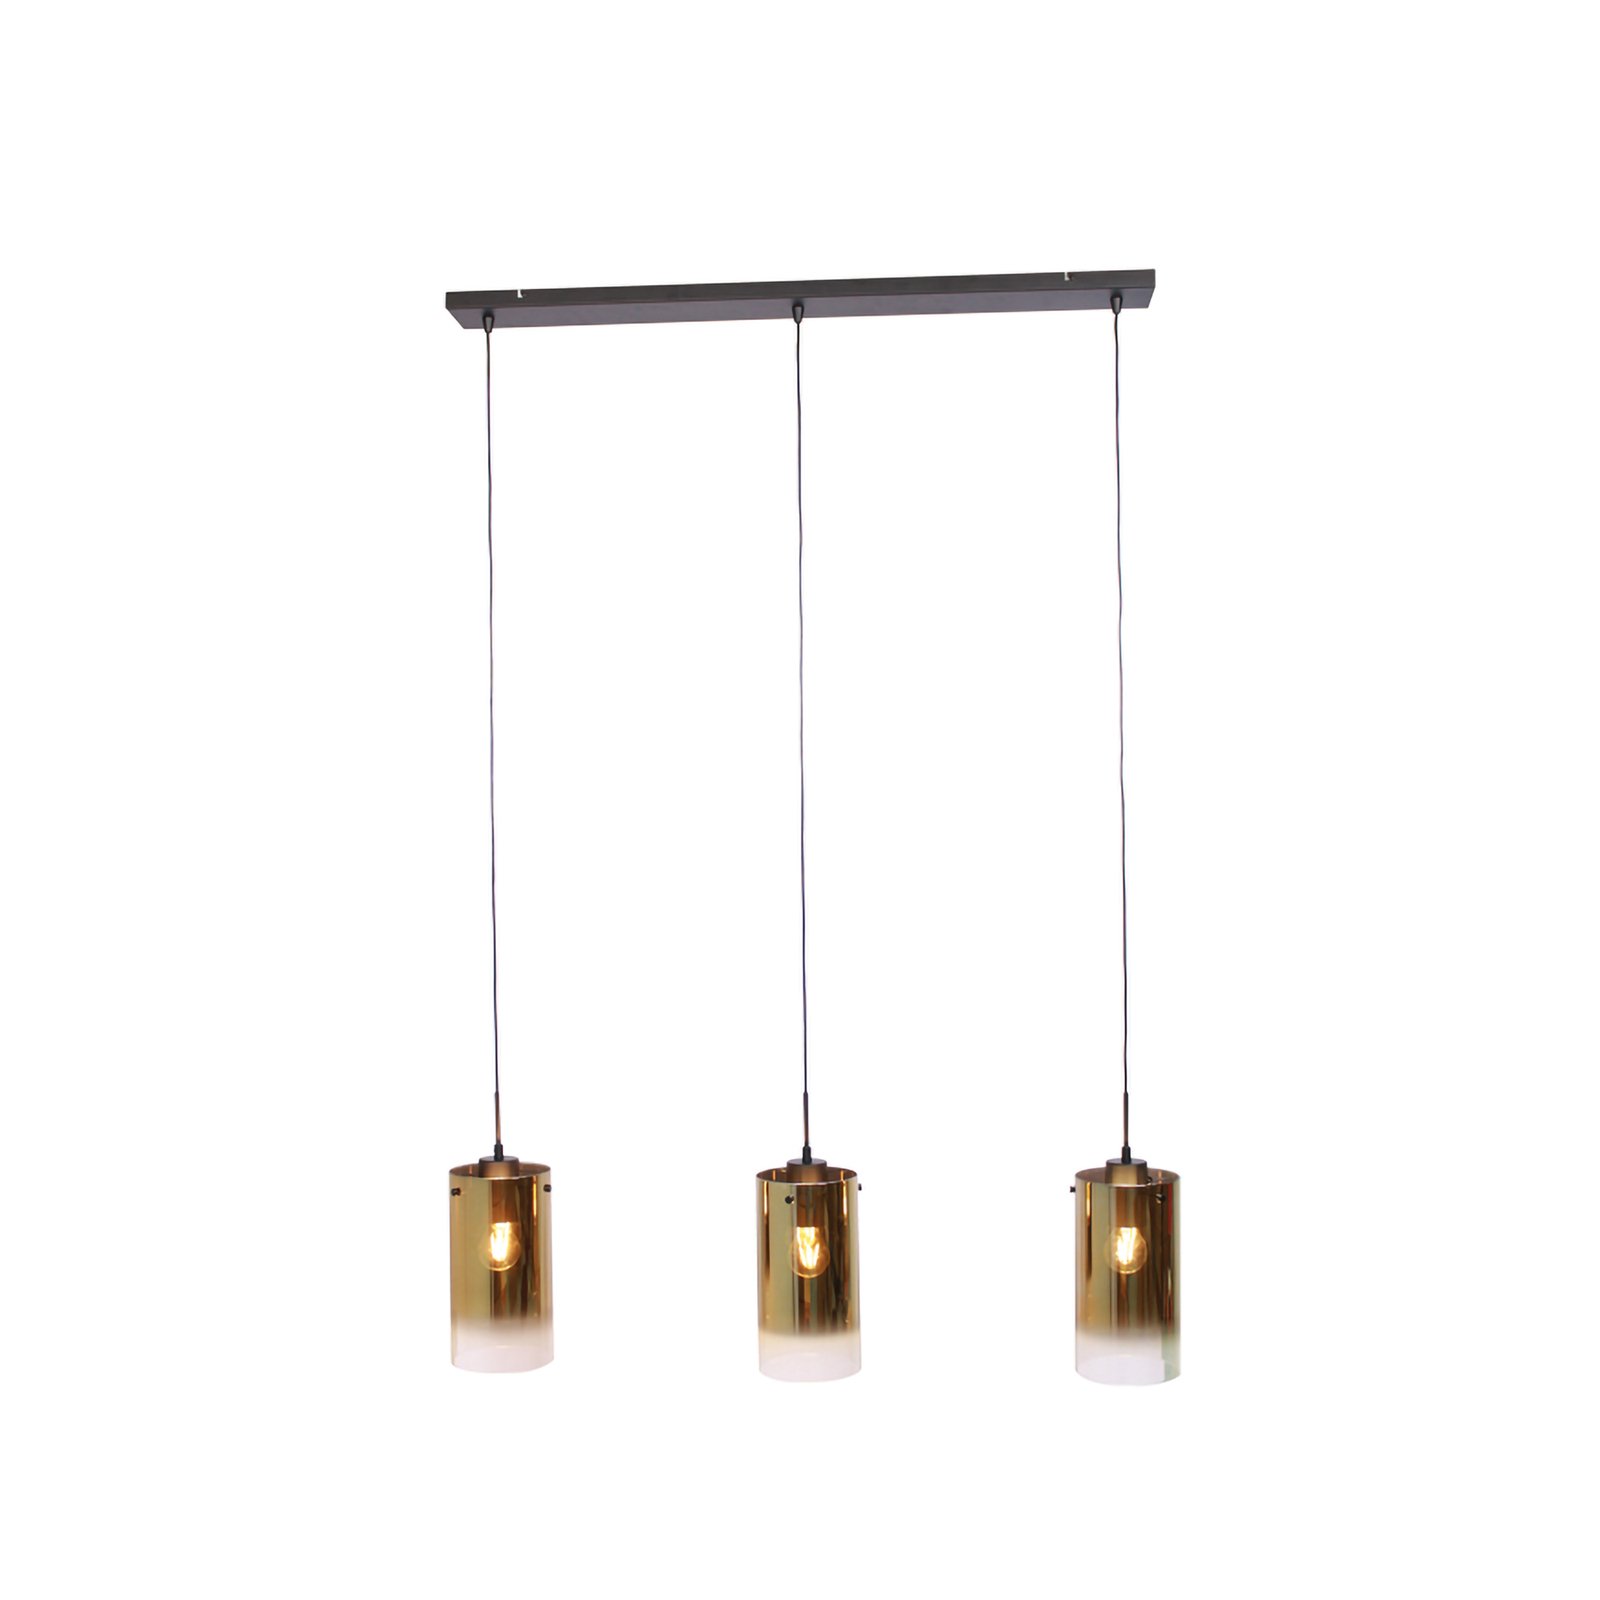 Závěsná lampa Ventotto, černá/zlatá, délka 105 cm, 3 světla, sklo